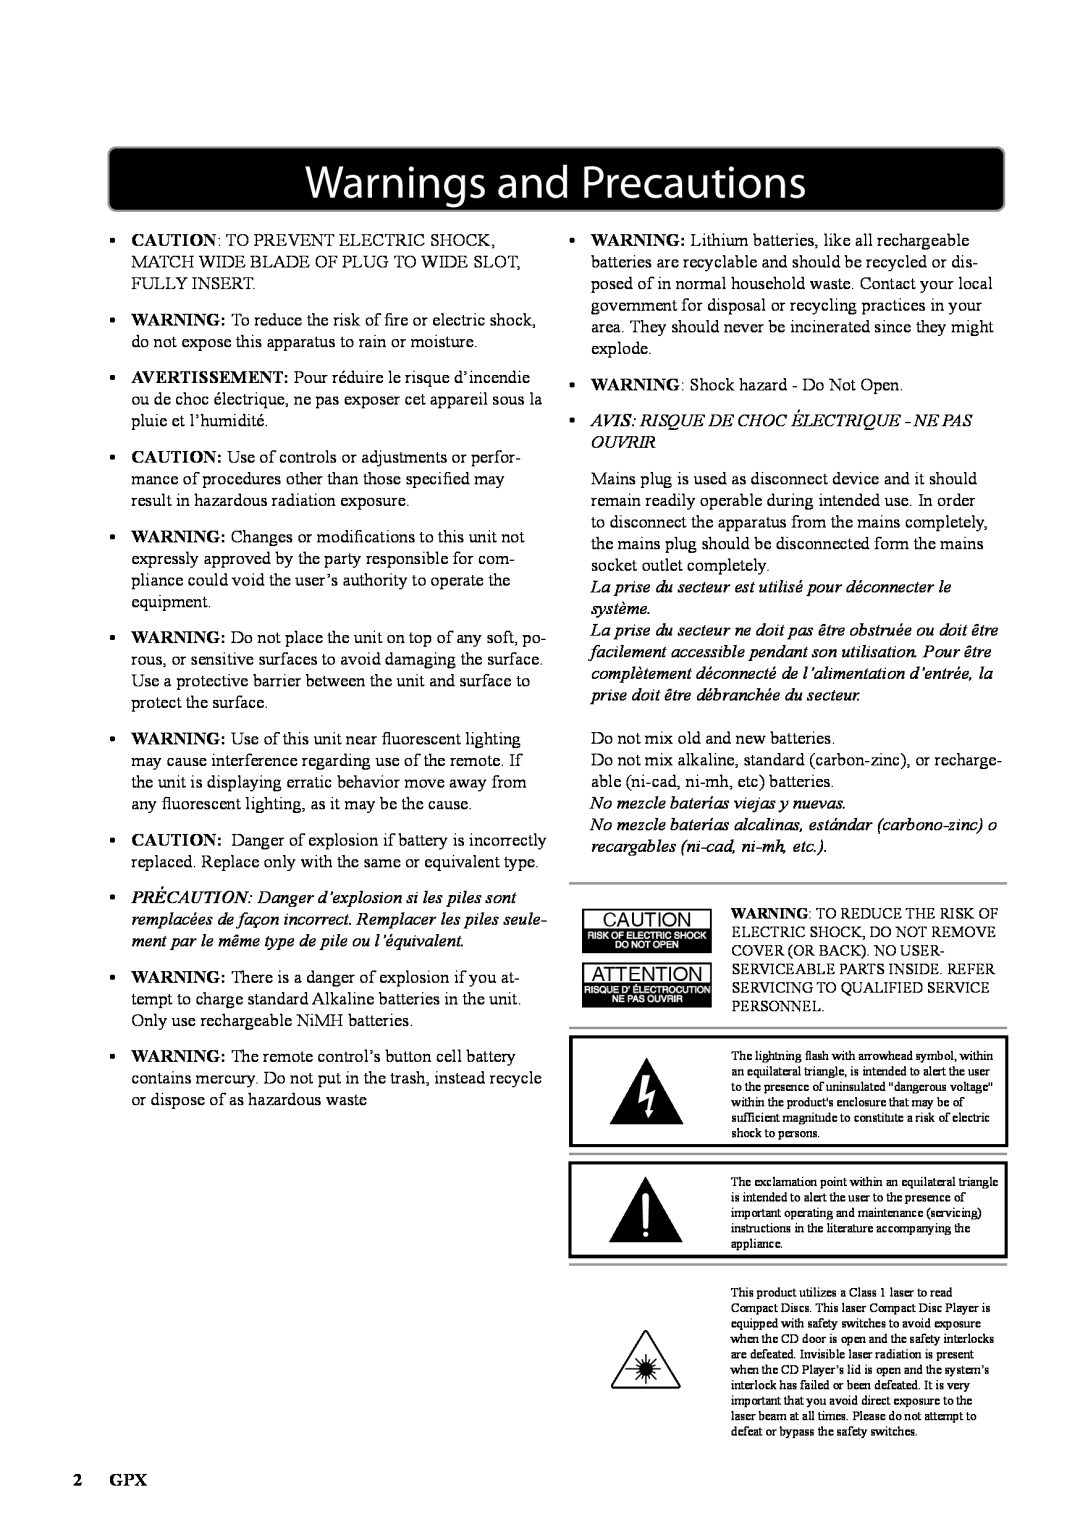 GPX 1311-0721-10, D200B manual Warnings and Precautions, Avis Risque De Choc Électrique - Ne Pas Ouvrir, 2 GPX 